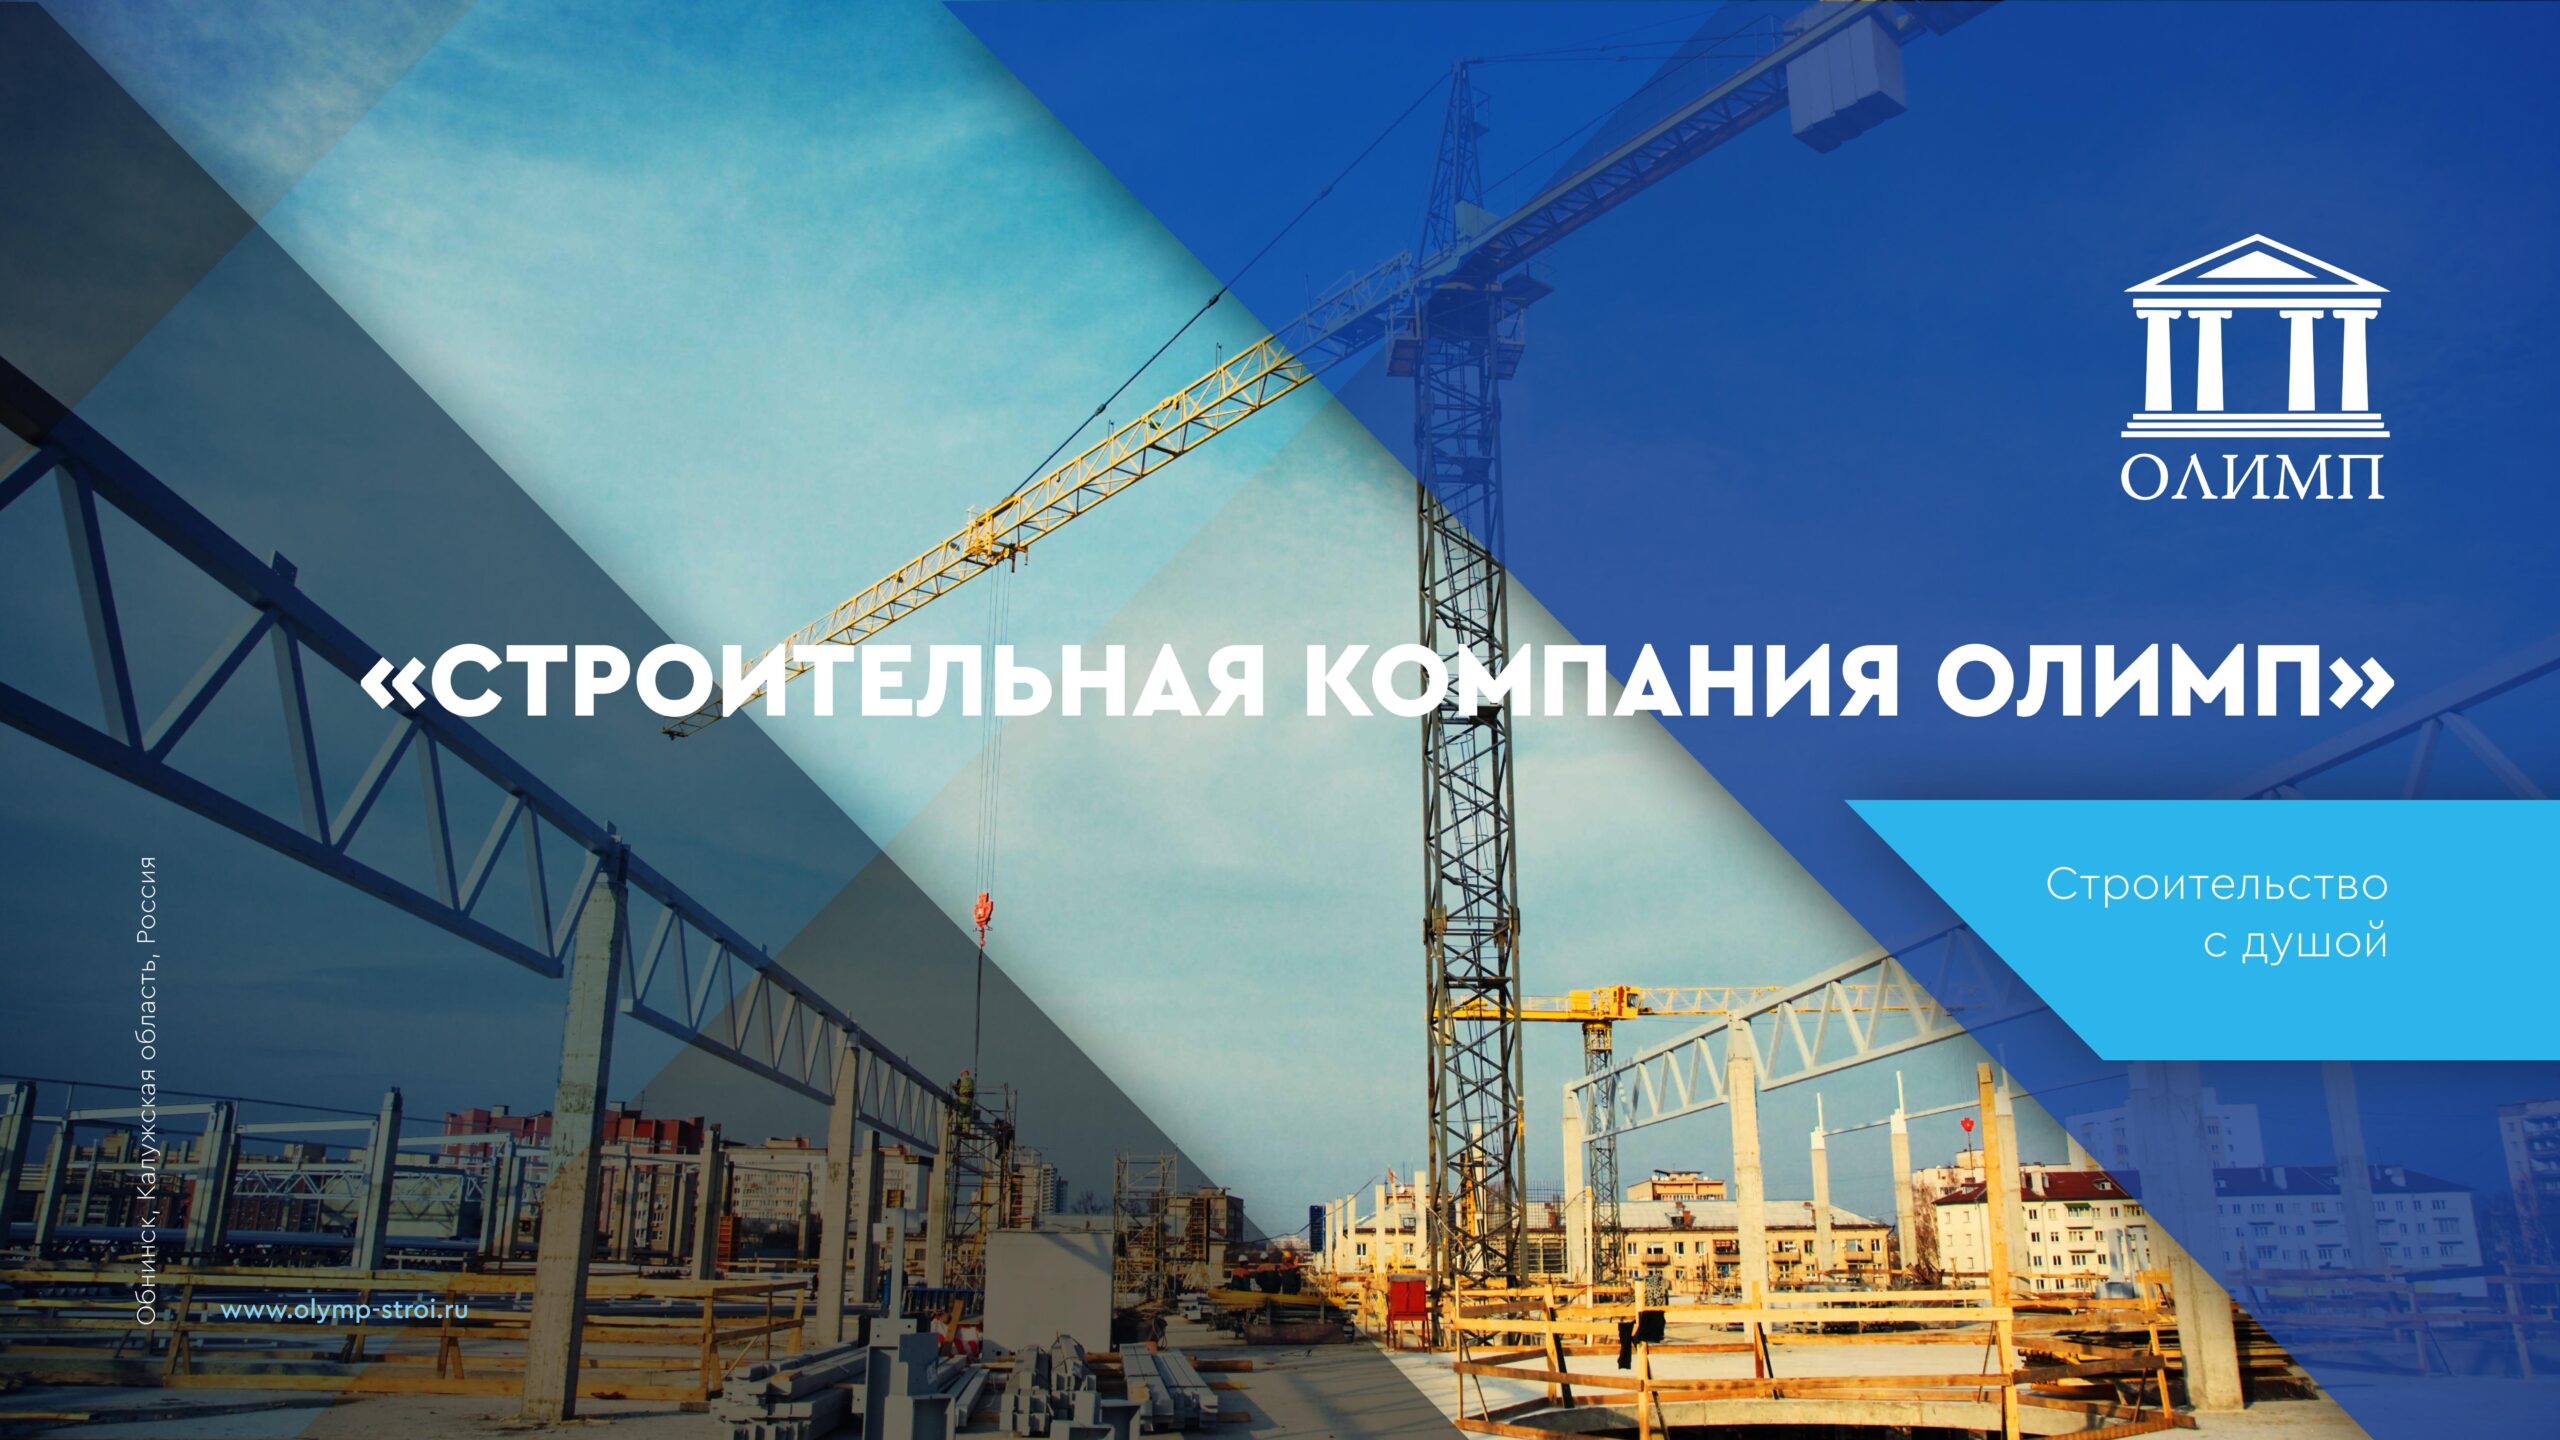 Презентация строительной компании — функция генерального подрядчика слайд 1